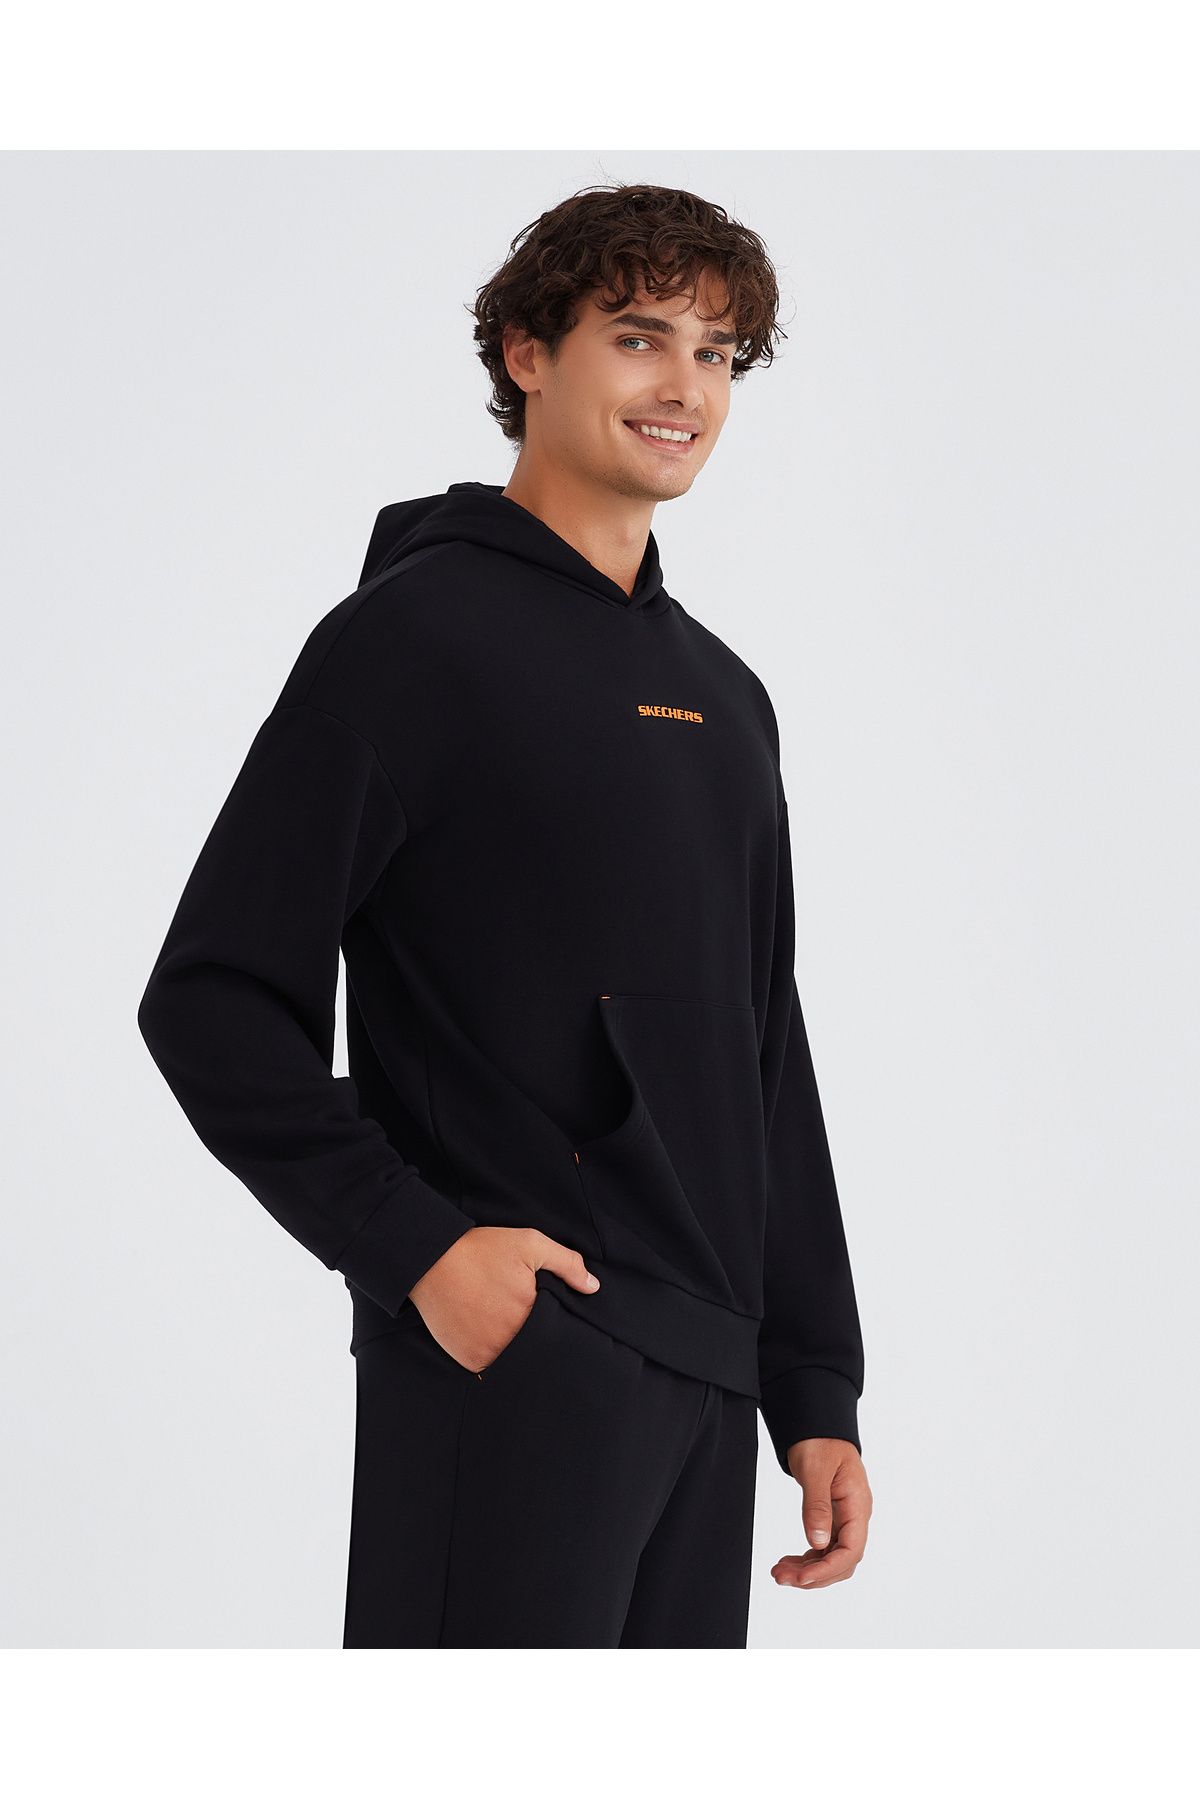 Skechers M Essential Hoodie Sweatshirt Men's Black Sweatshirt S232438-001 -  Trendyol